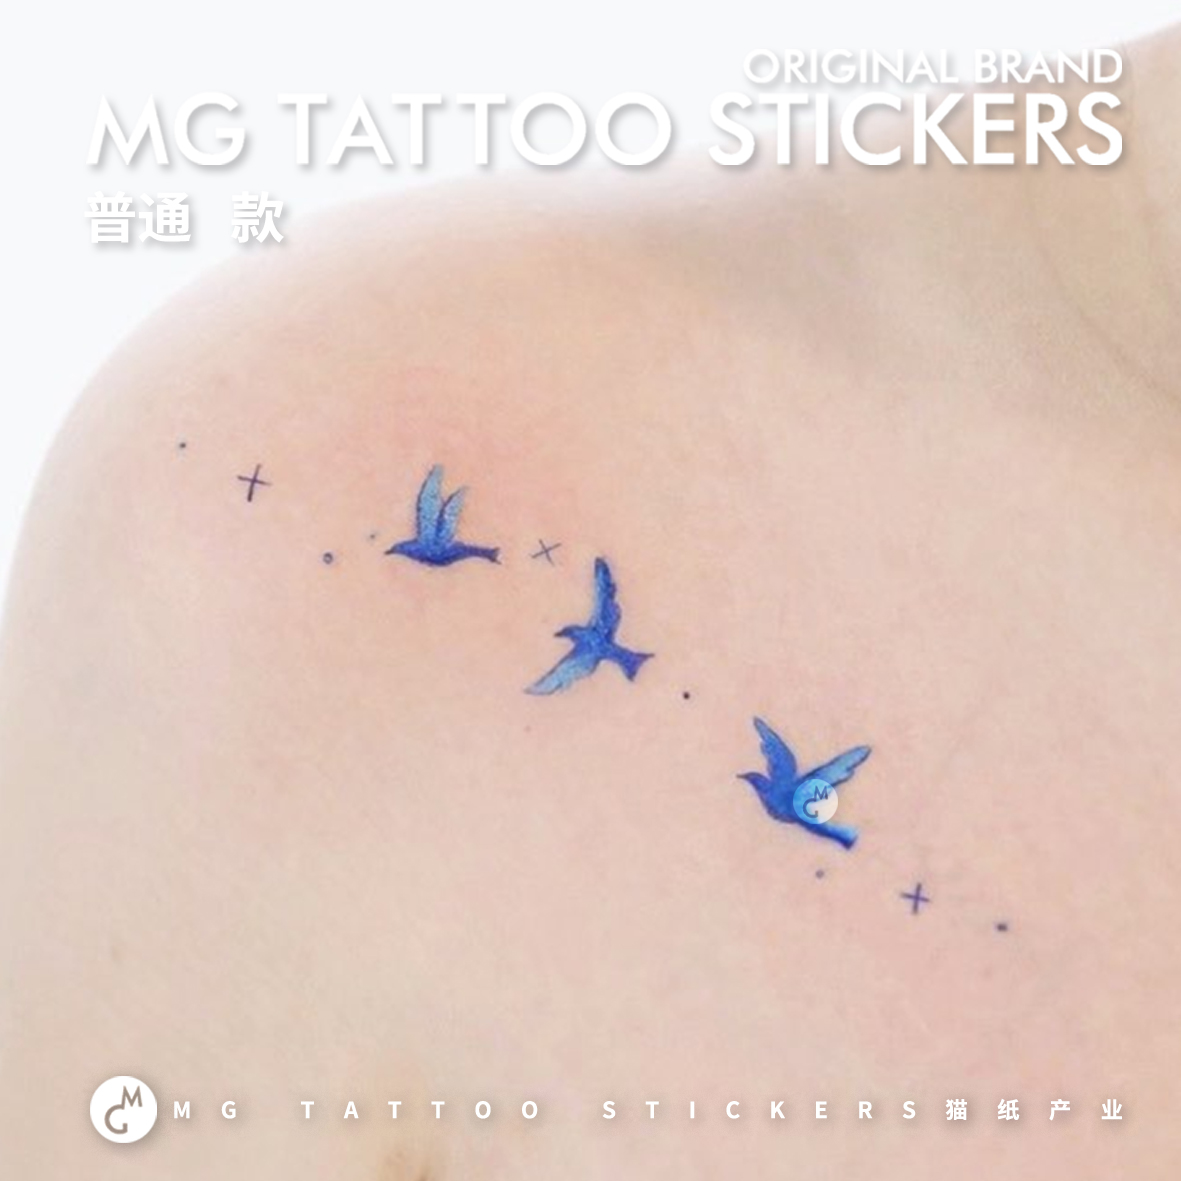 MG tattoo 蓝色飞鸟 唯美浪漫耳朵锁骨肩膀少女系文艺图案纹身贴